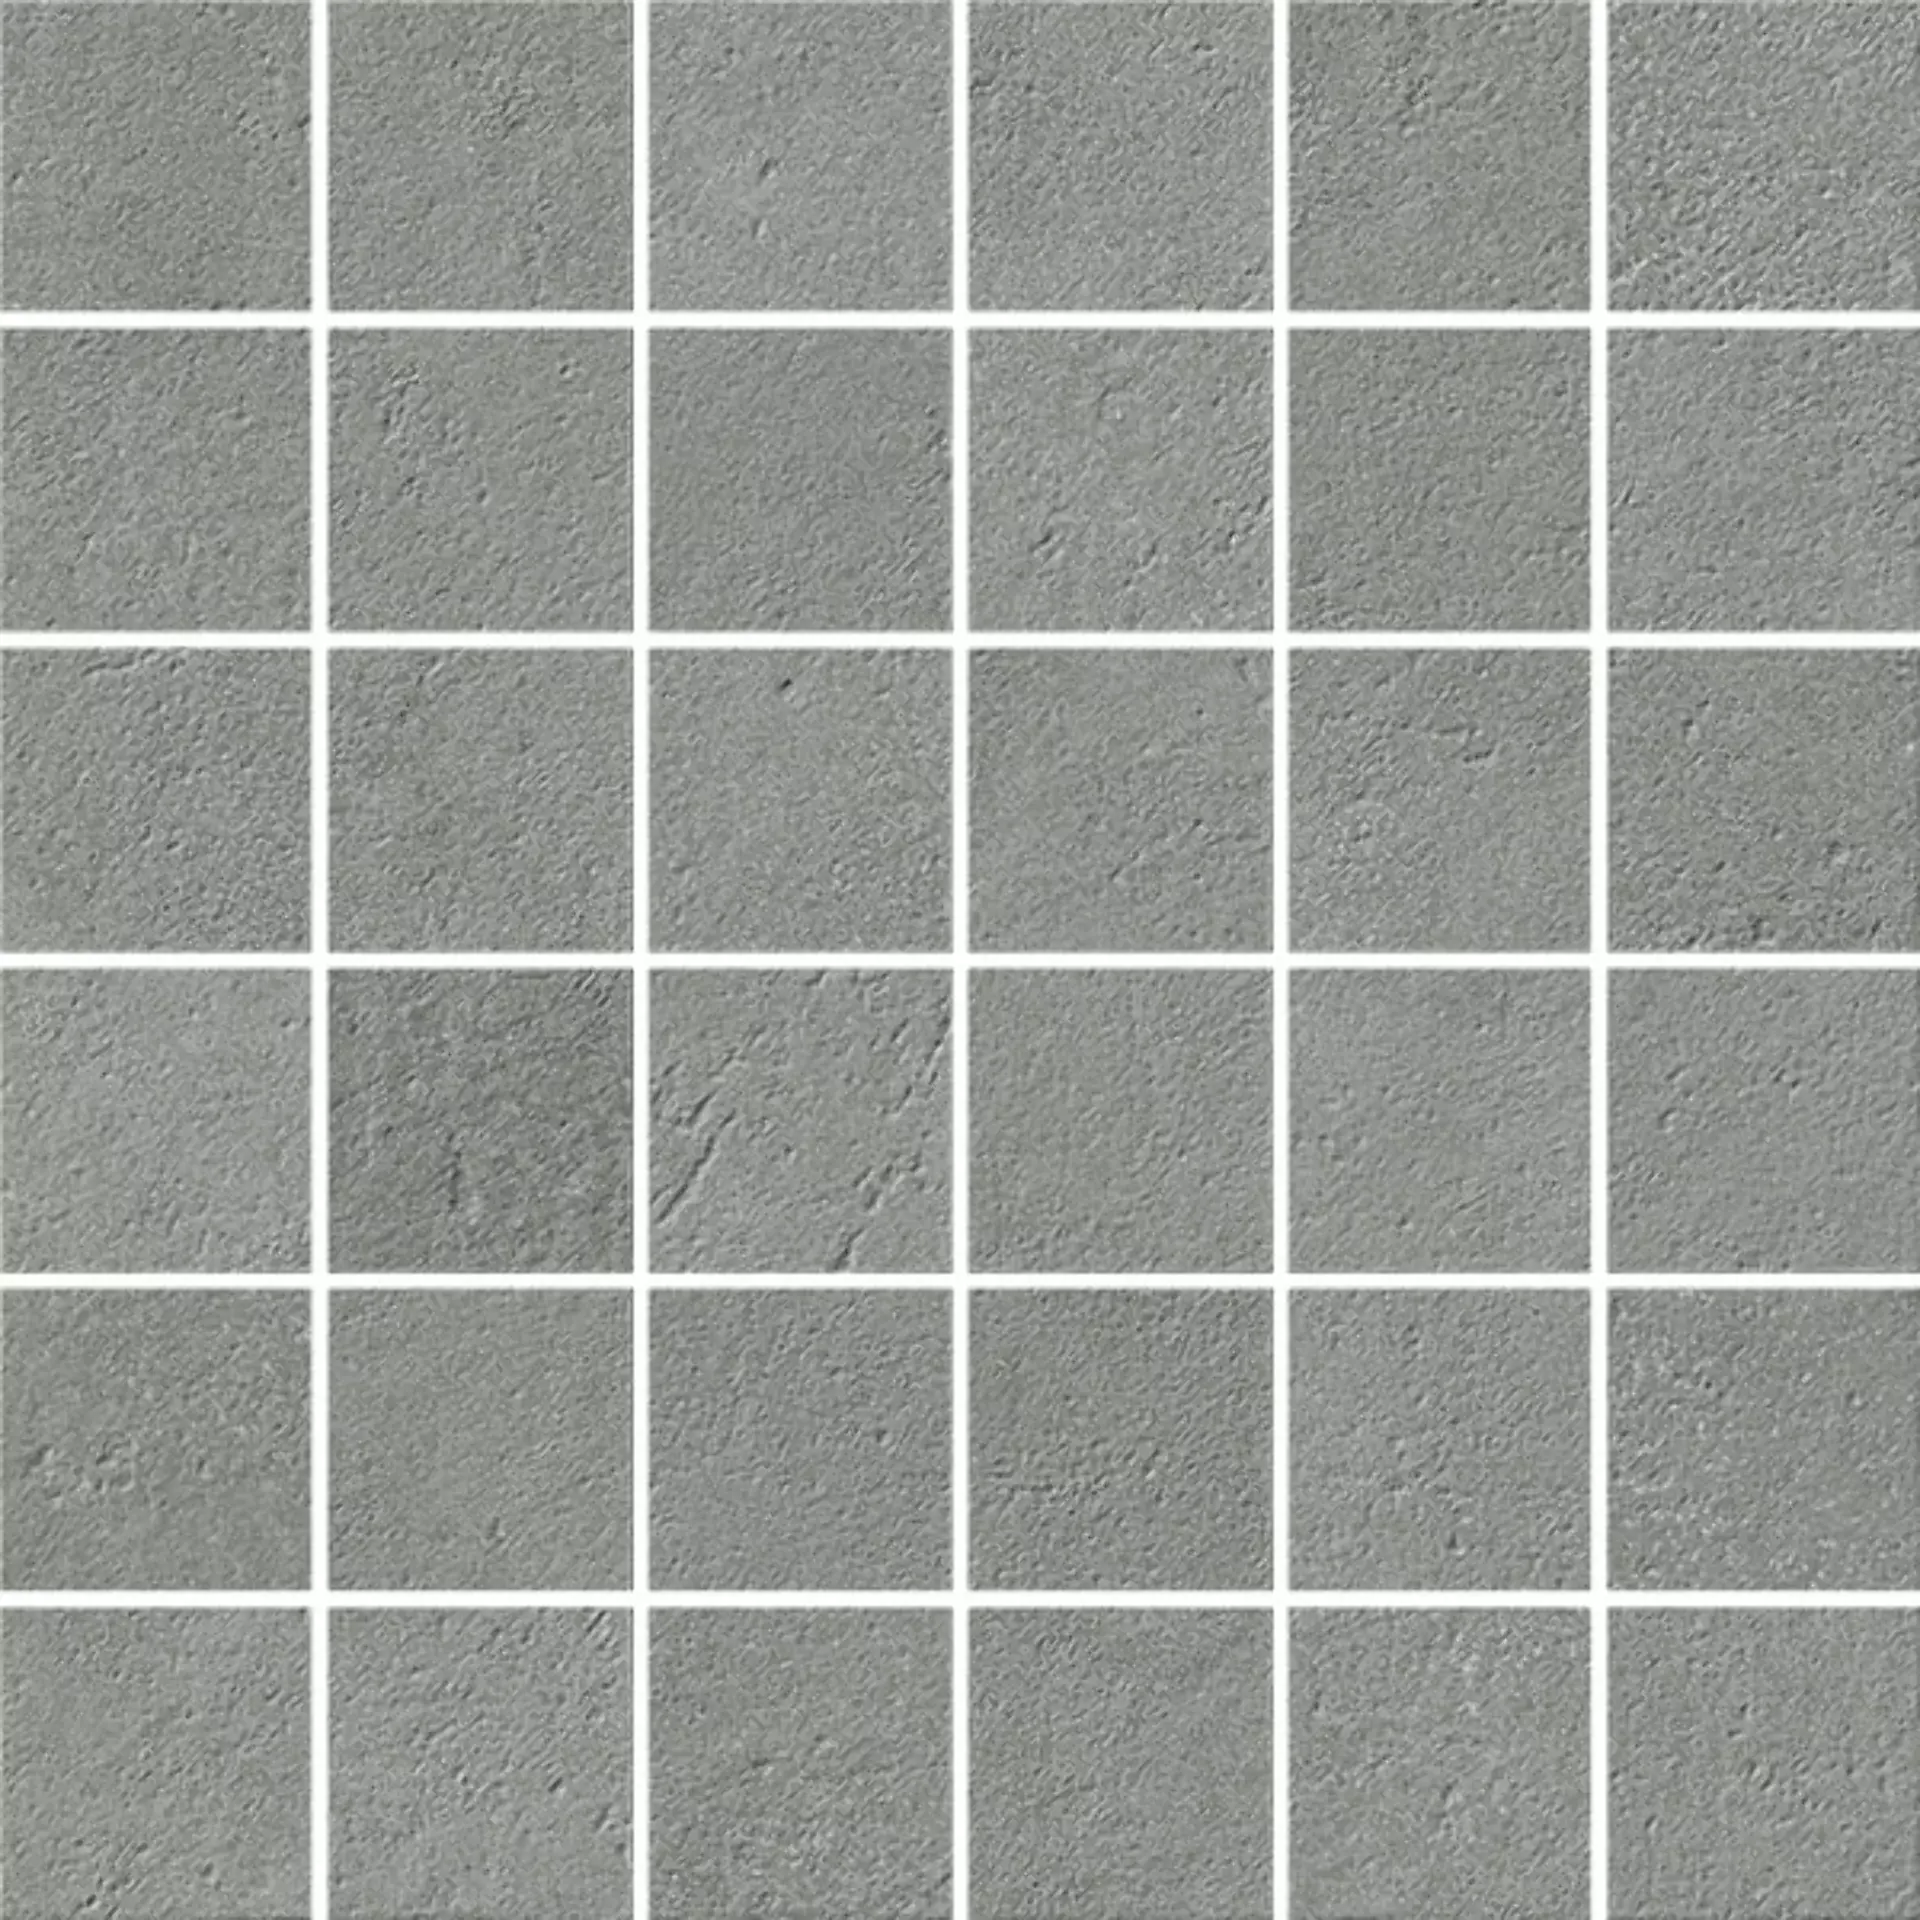 Italgraniti I Cementi Grey Strideup Mosaic FL063MA 30x30cm 9mm